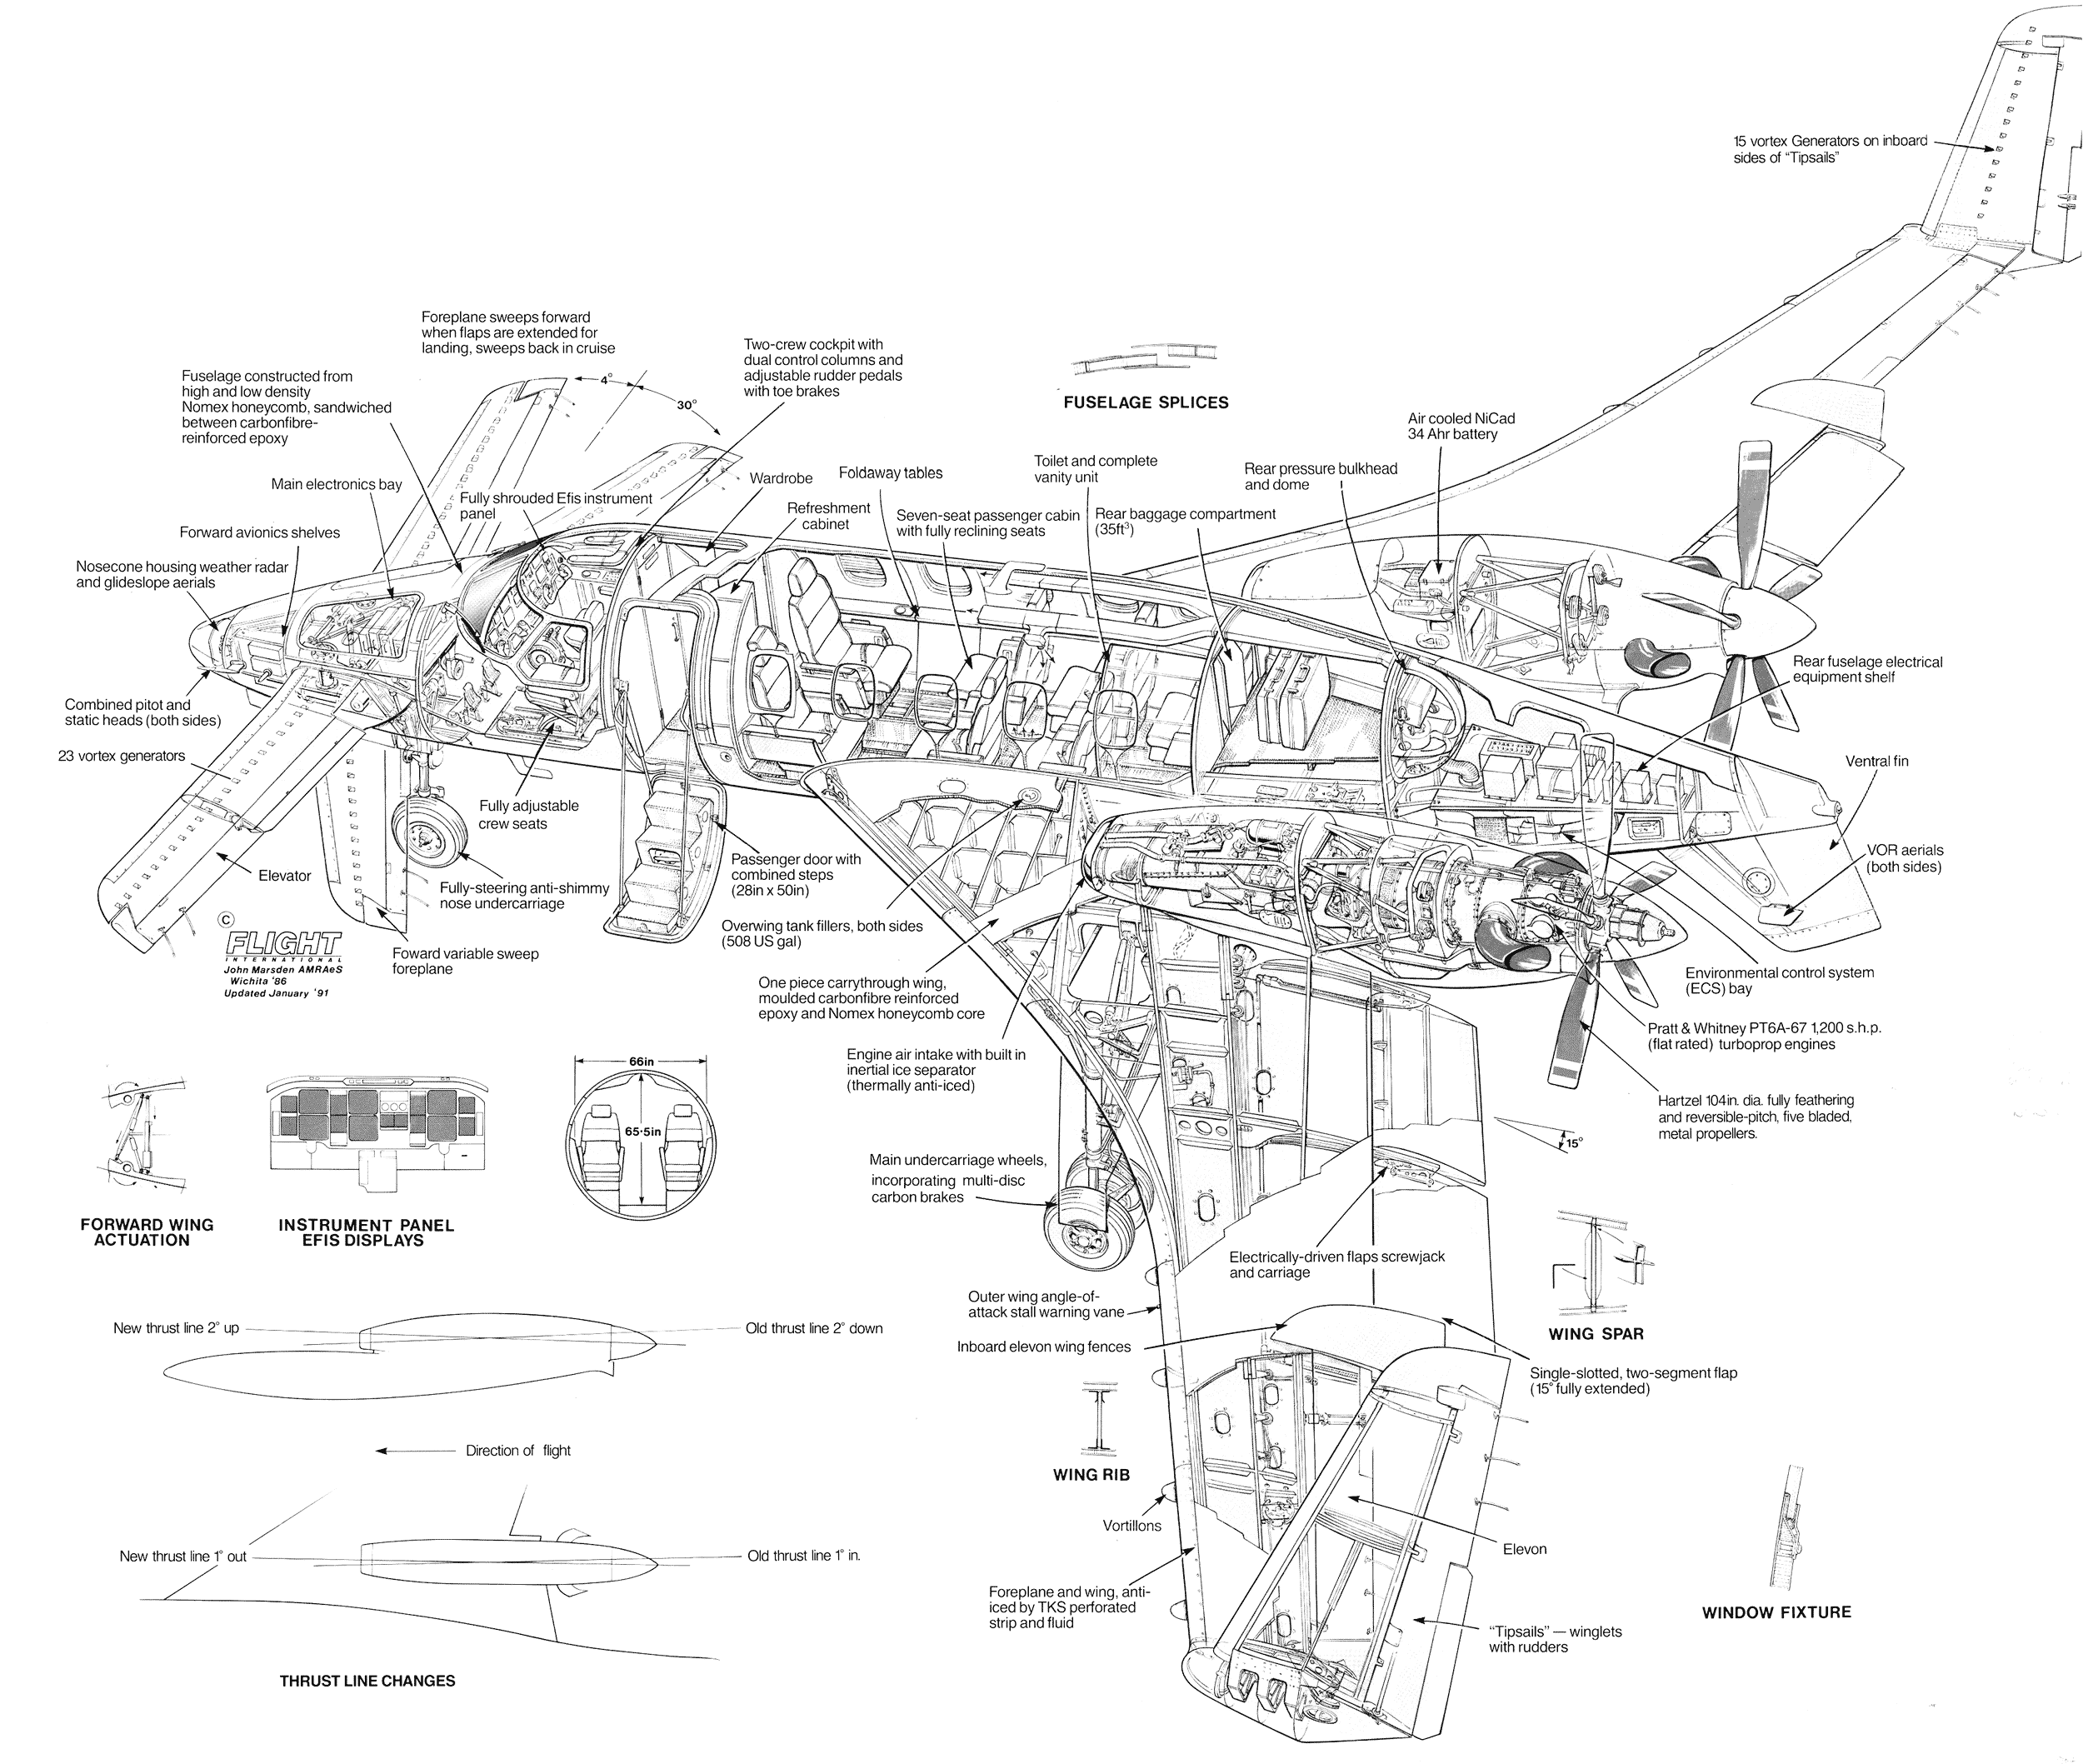 Beechcraft Starship cutaway